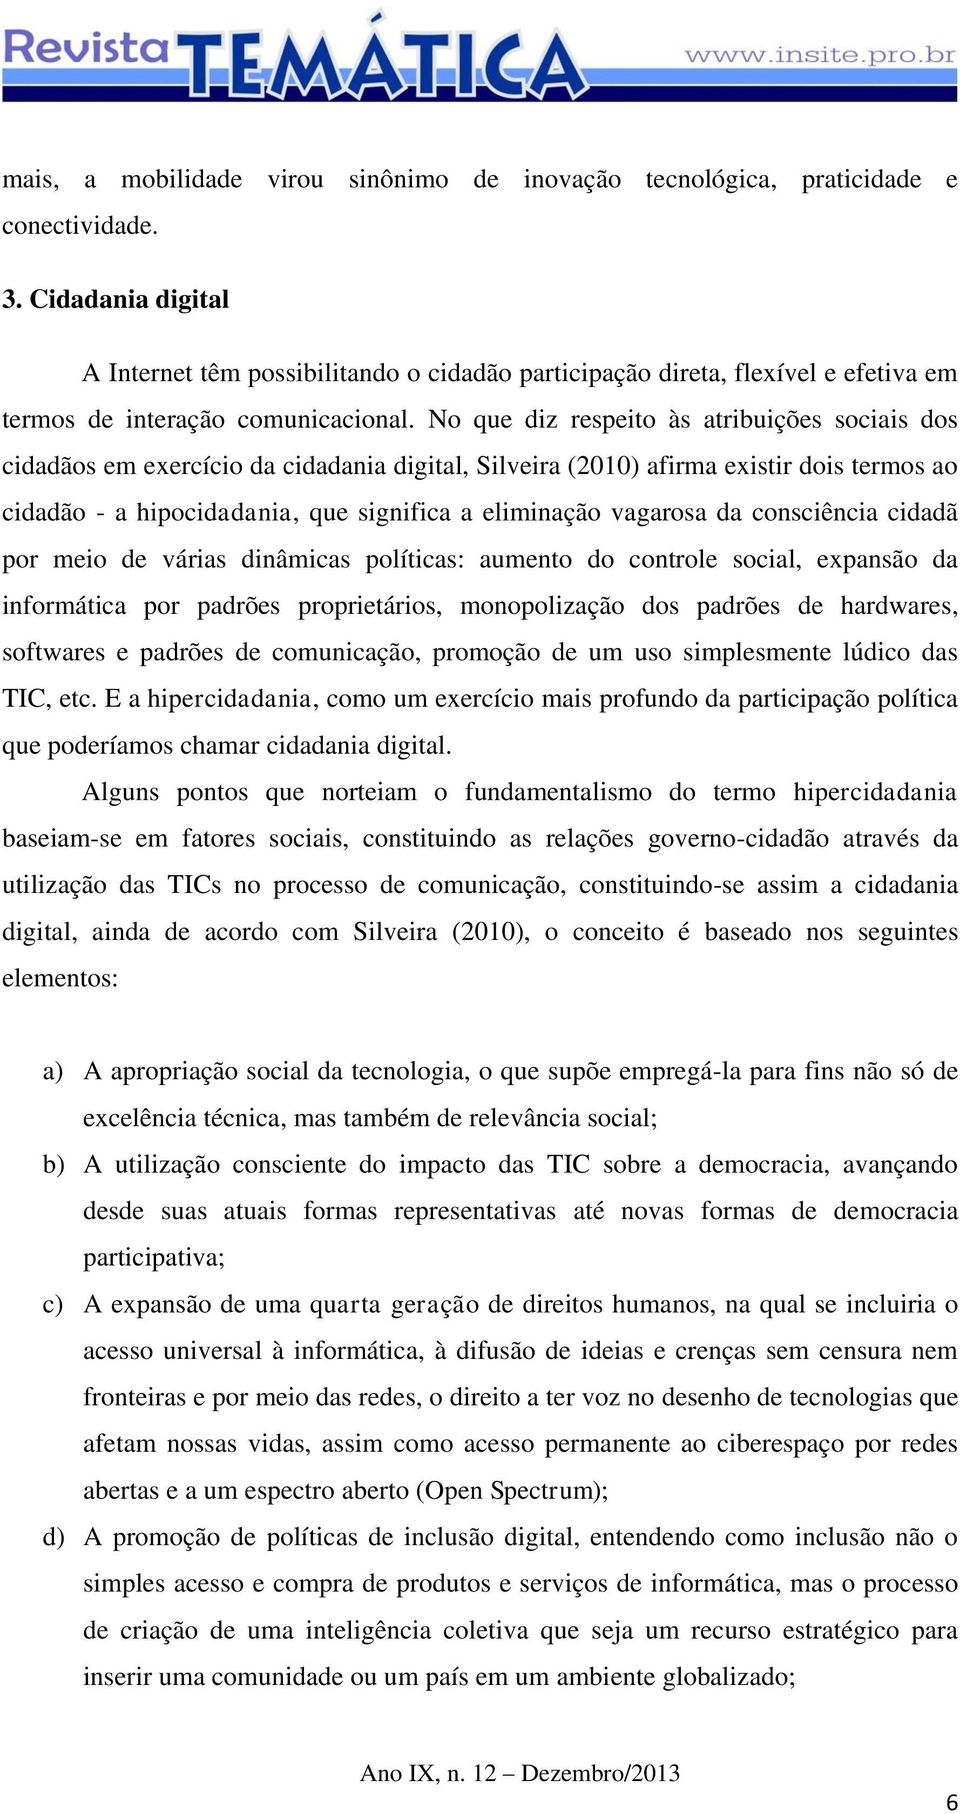 No que diz respeito às atribuições sociais dos cidadãos em exercício da cidadania digital, Silveira (2010) afirma existir dois termos ao cidadão - a hipocidadania, que significa a eliminação vagarosa